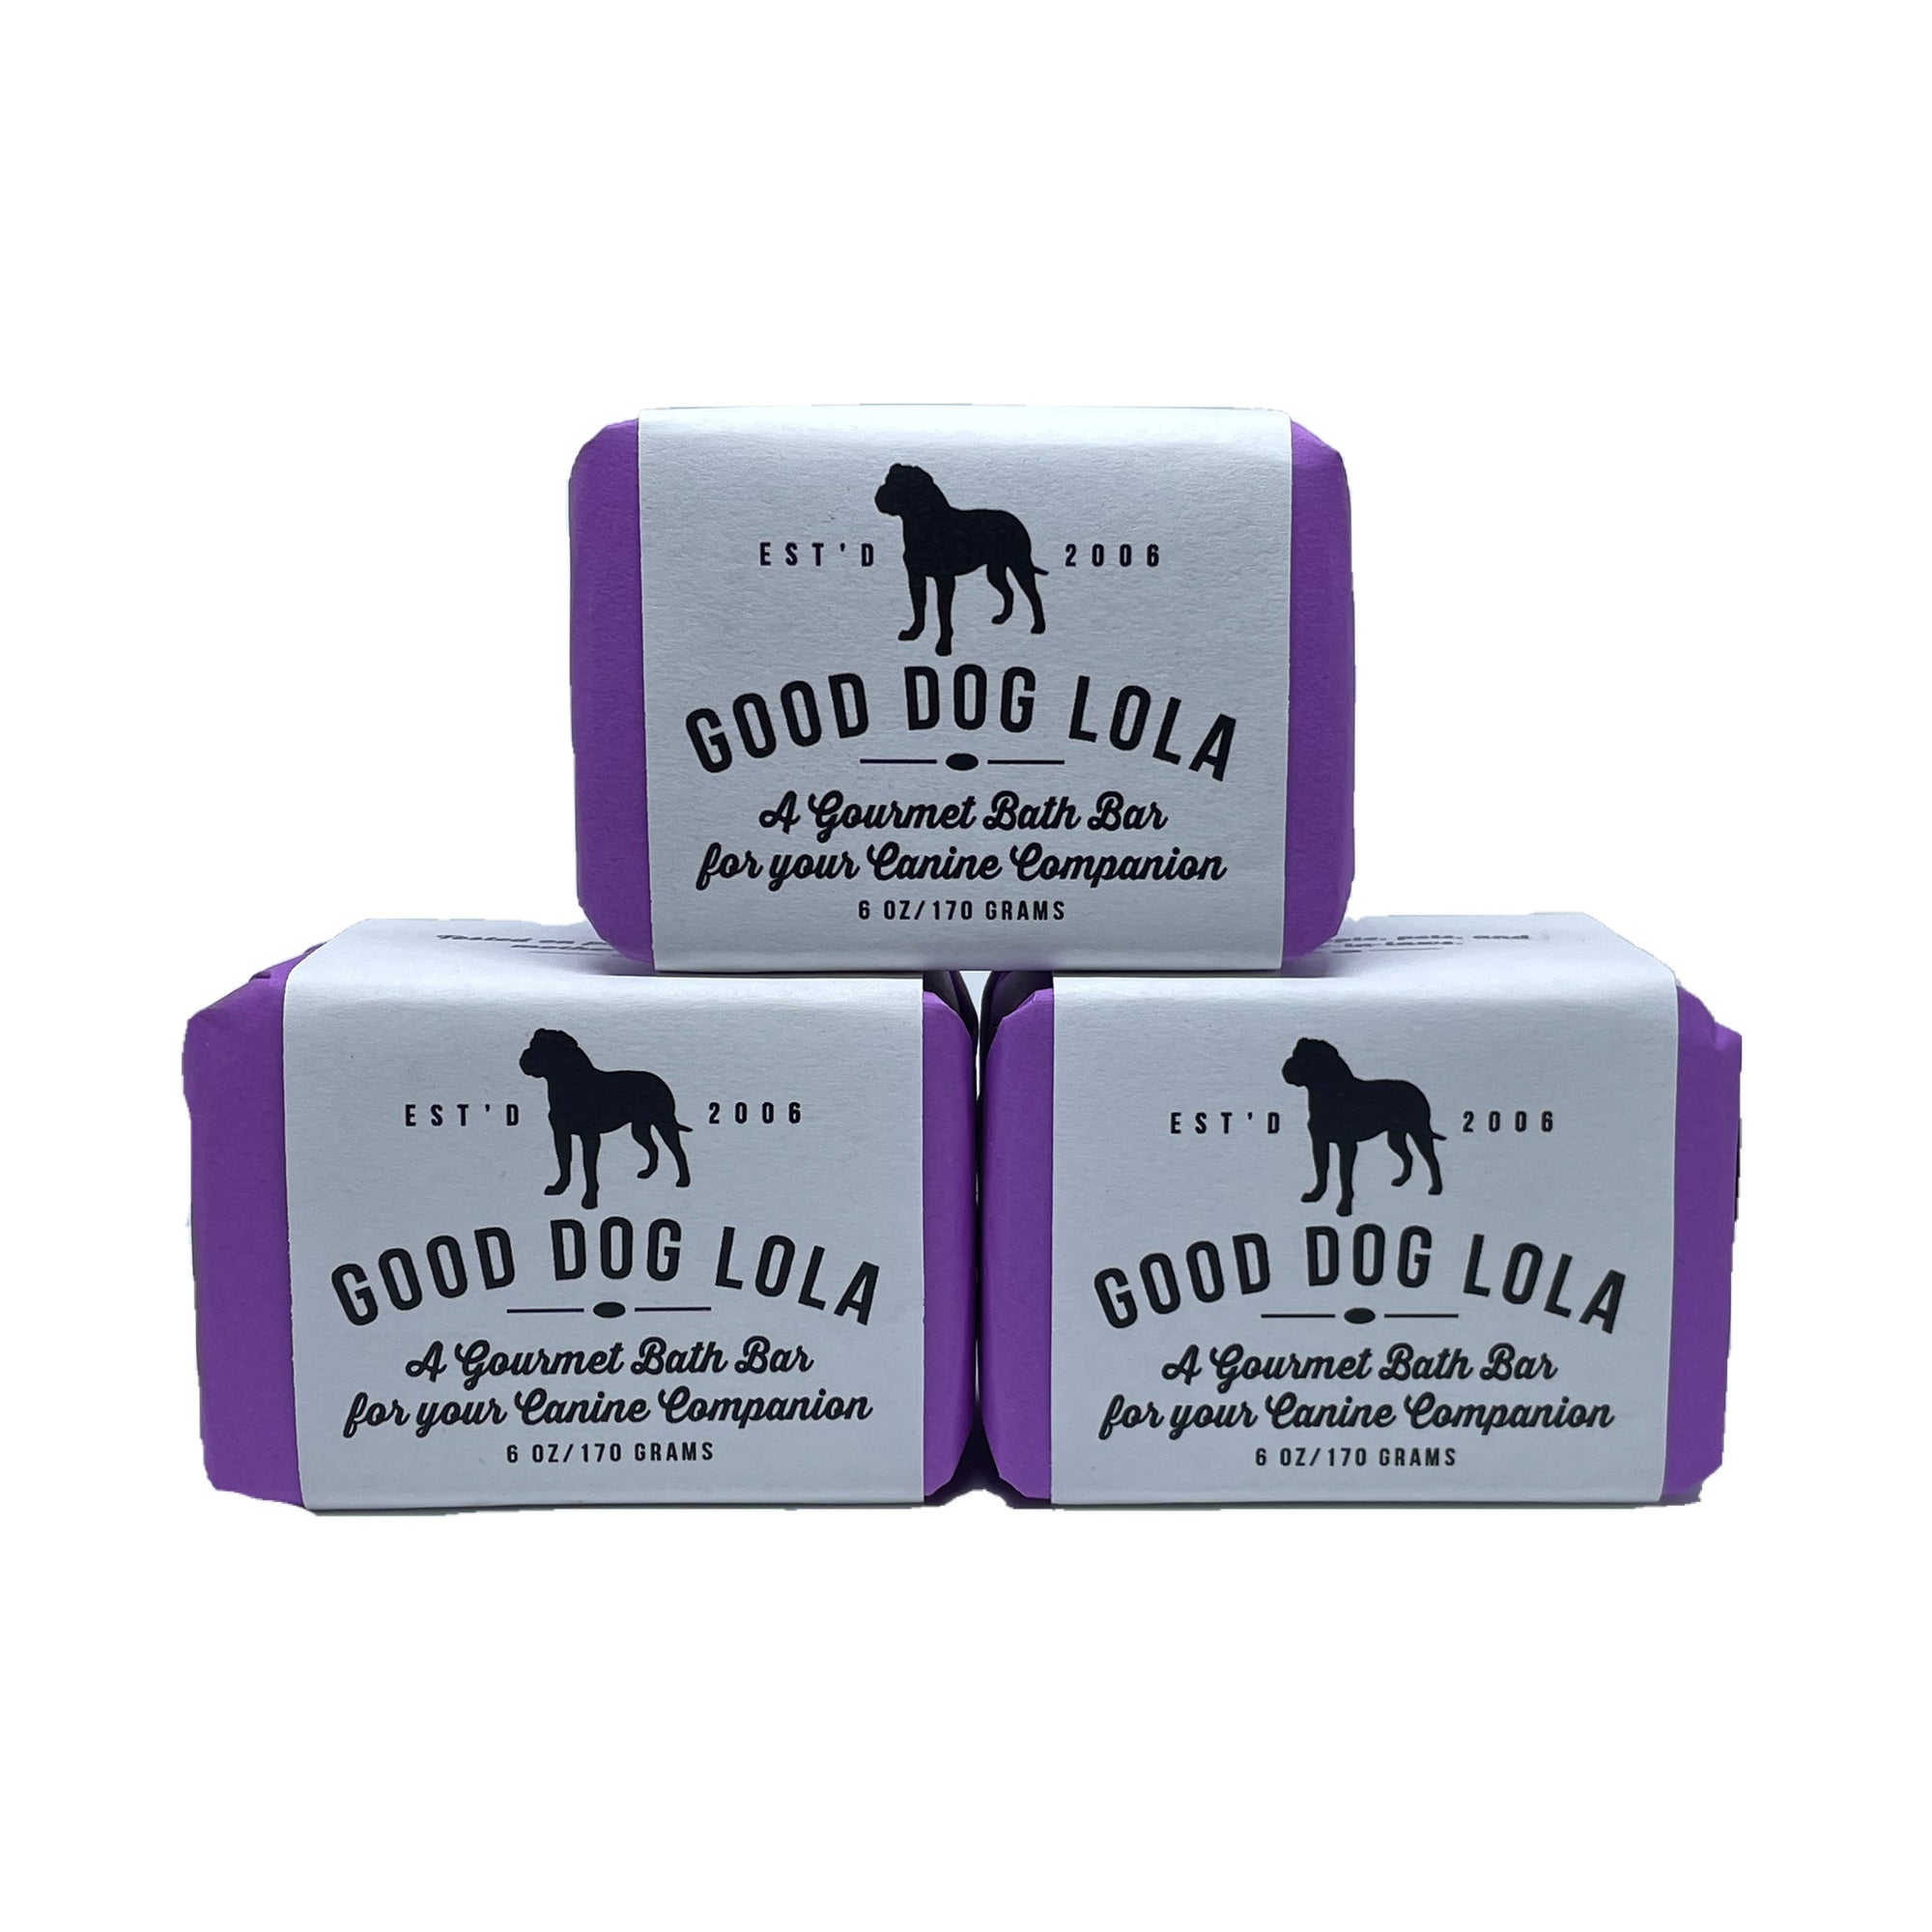 Good Dog Lola Bath Bar